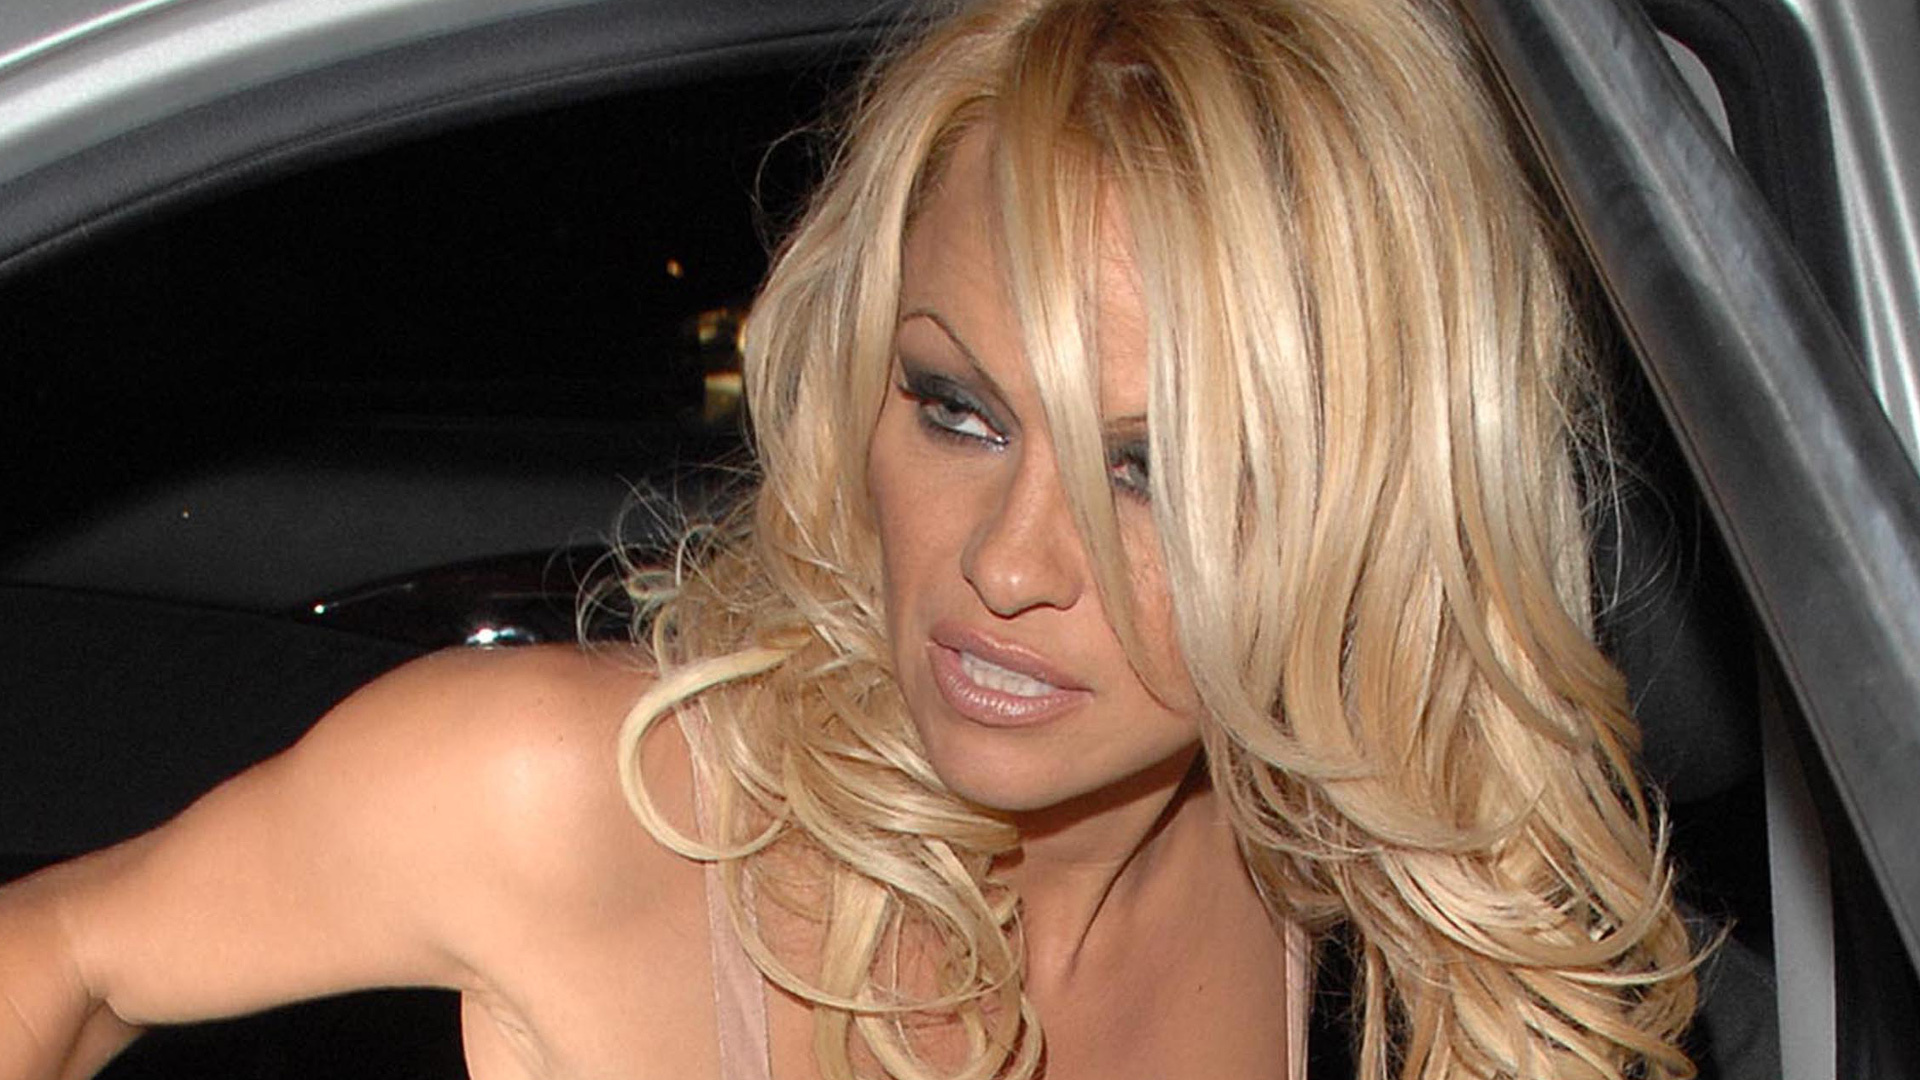 Pamela Anderson el vídeo porno casero fue su mayor pesadilla imagen